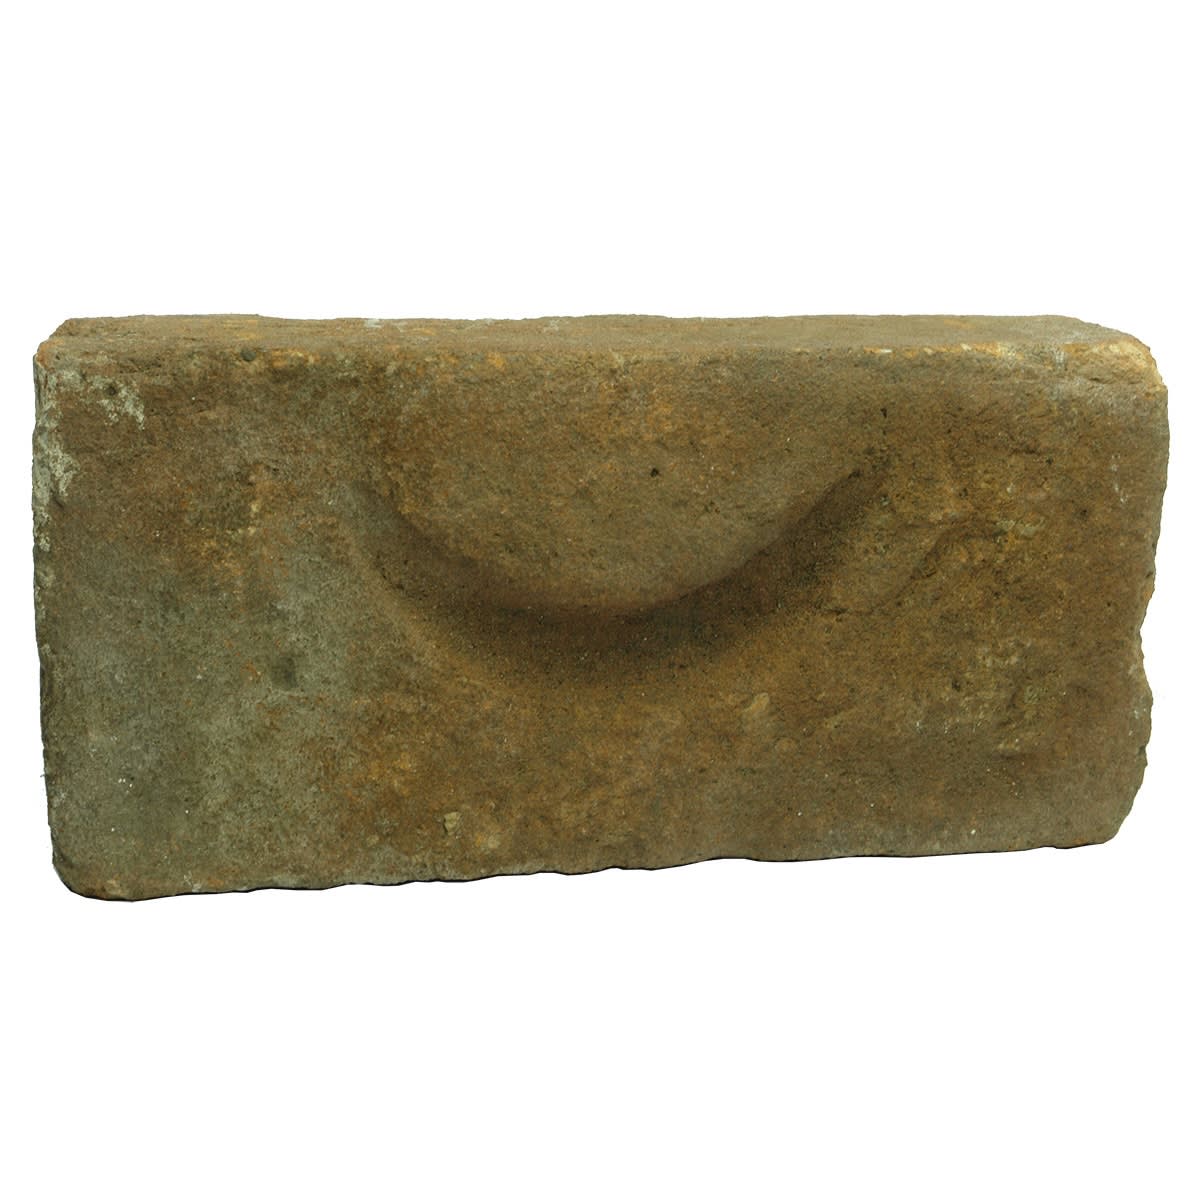 Brick. Crescent moon shape. Sandstock type.